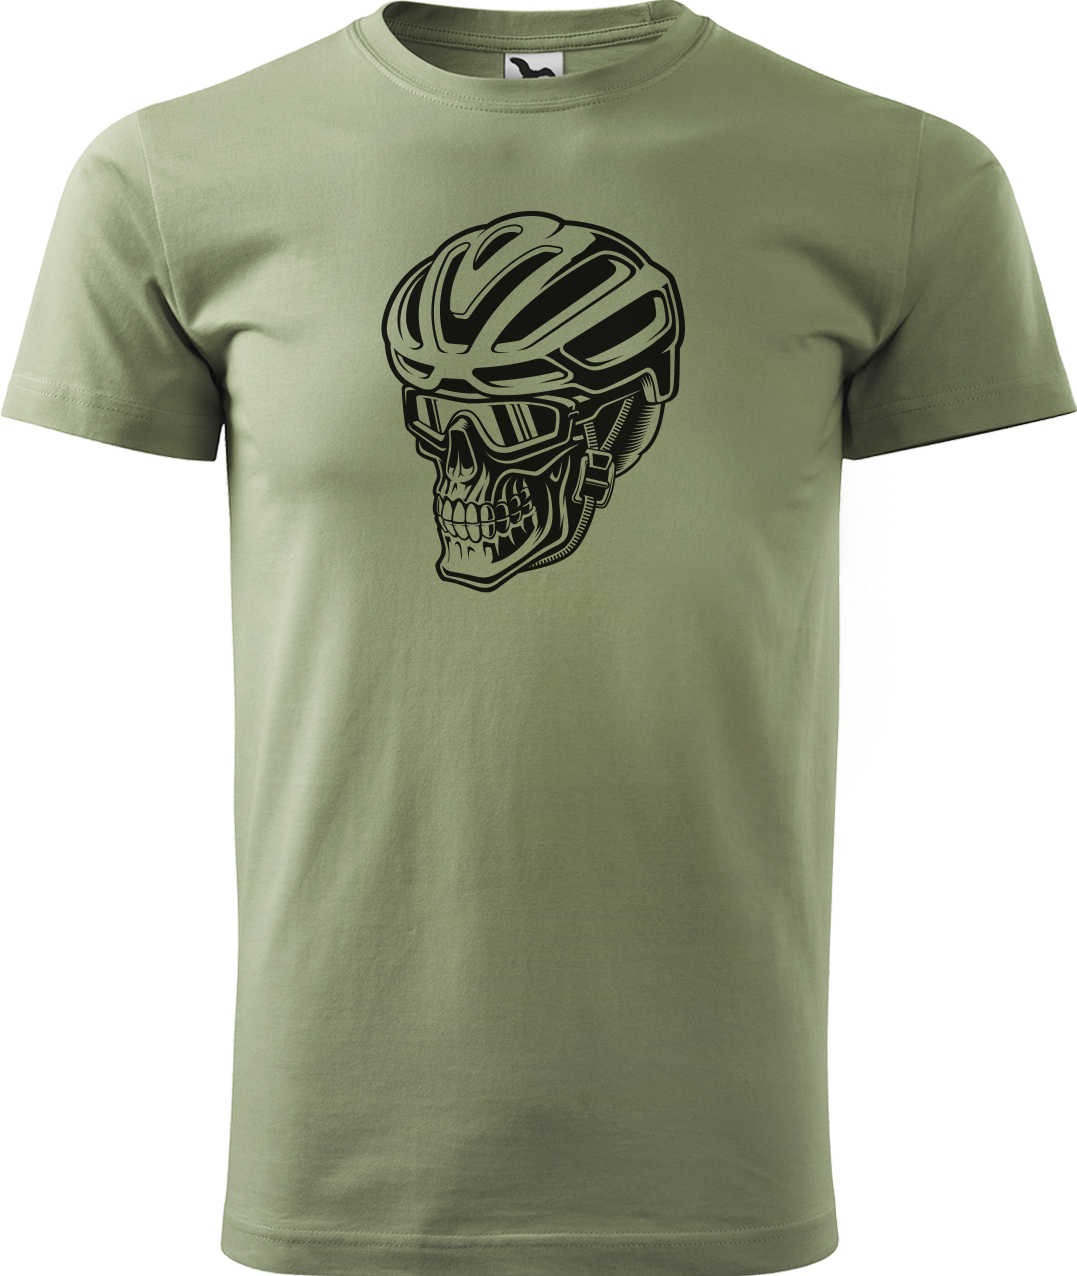 Pánské tričko pro cyklistu - Lebka v helmě Velikost: 4XL, Barva: Světlá khaki (28)